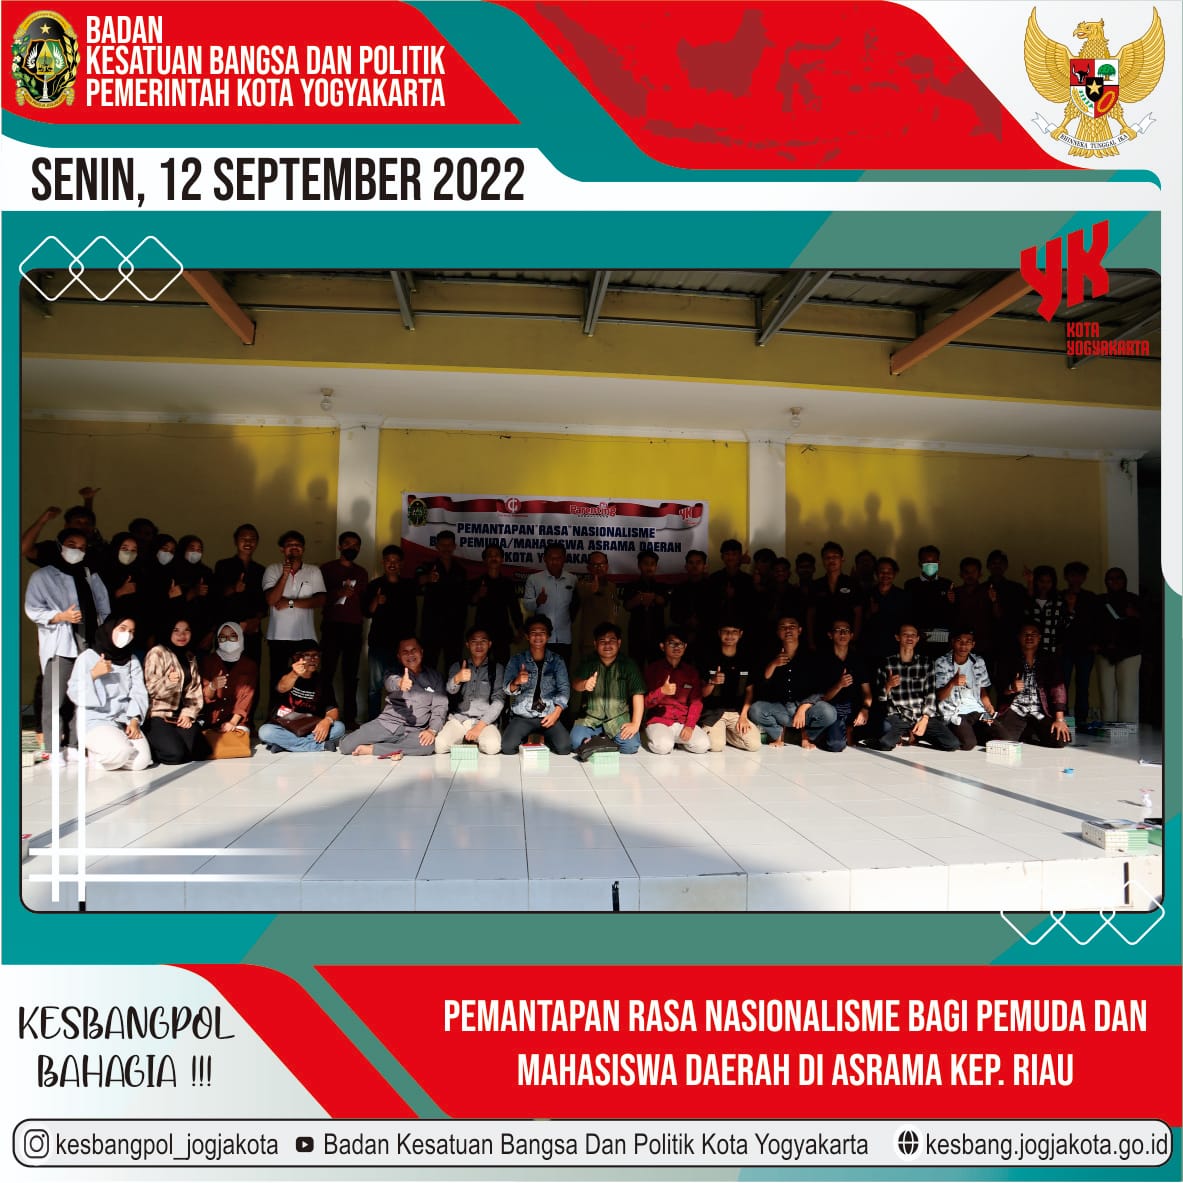 Pemantapan Rasa Nasionalisme Bagi Pemuda dan Mahasiswa Daerah di Asrama Kep Riau